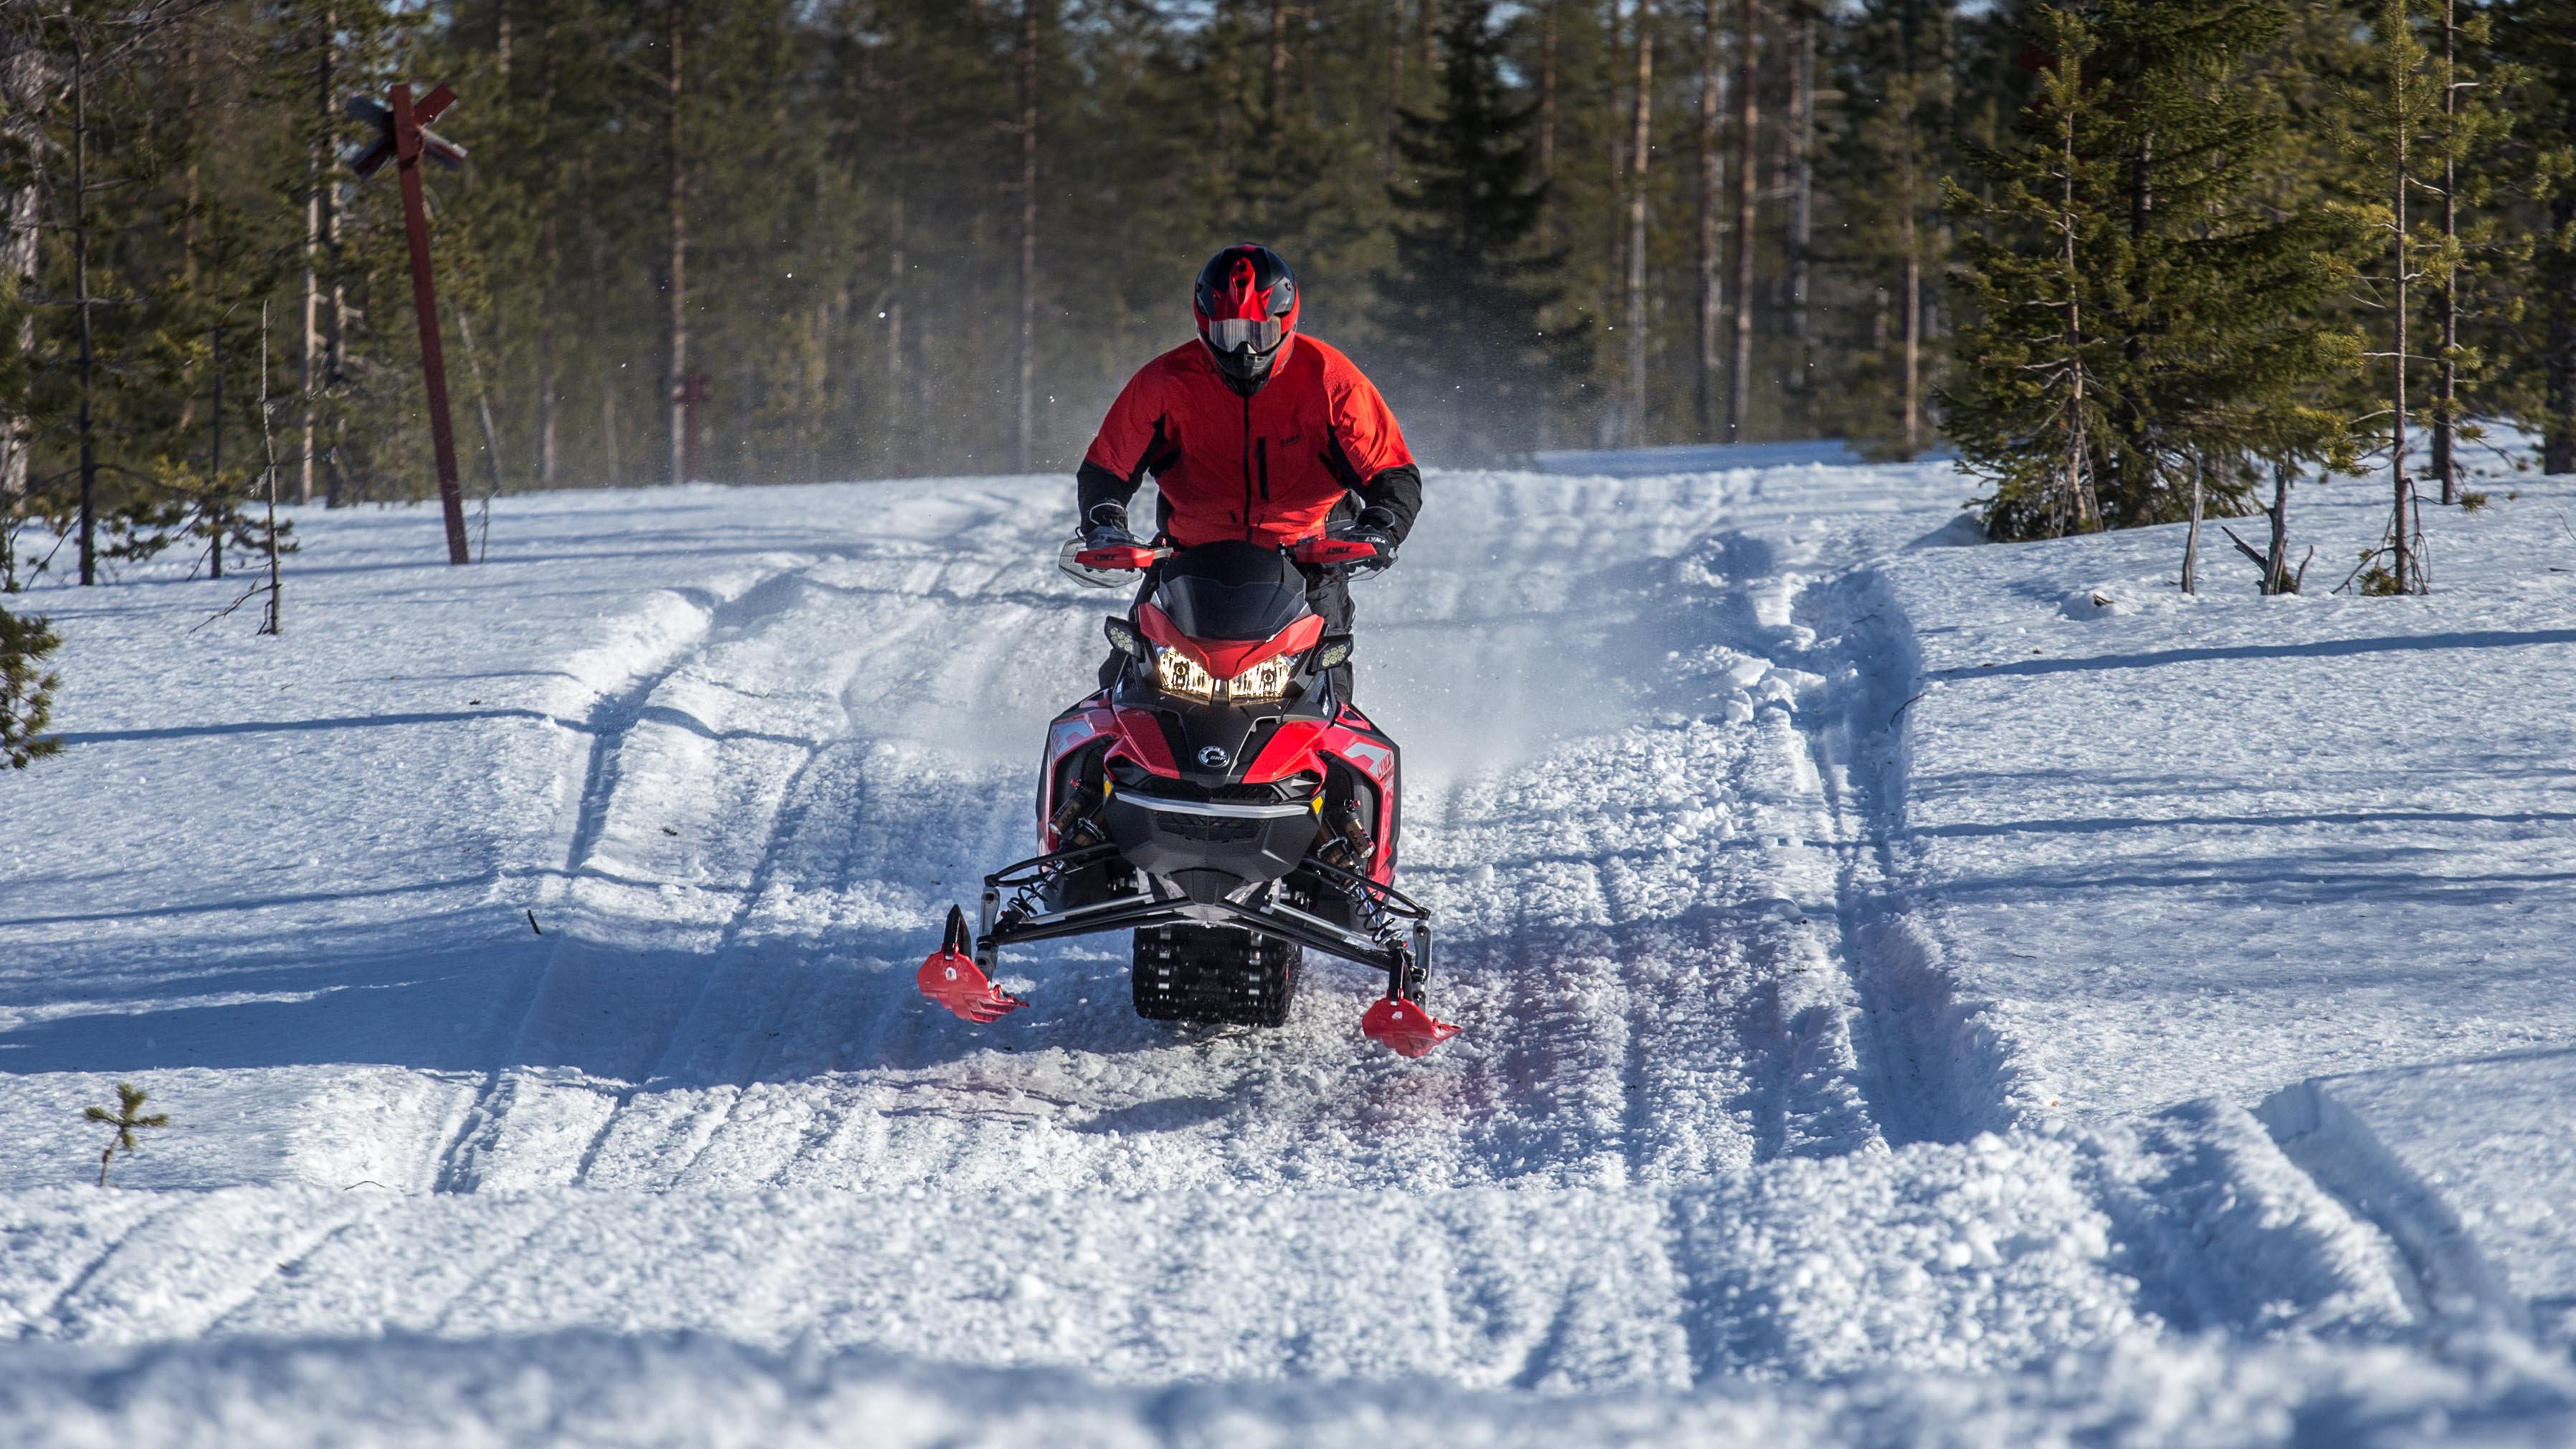 Fotbollsspelaren Sami Hyypiä Lynx snöskoterkörning på ojämn stig